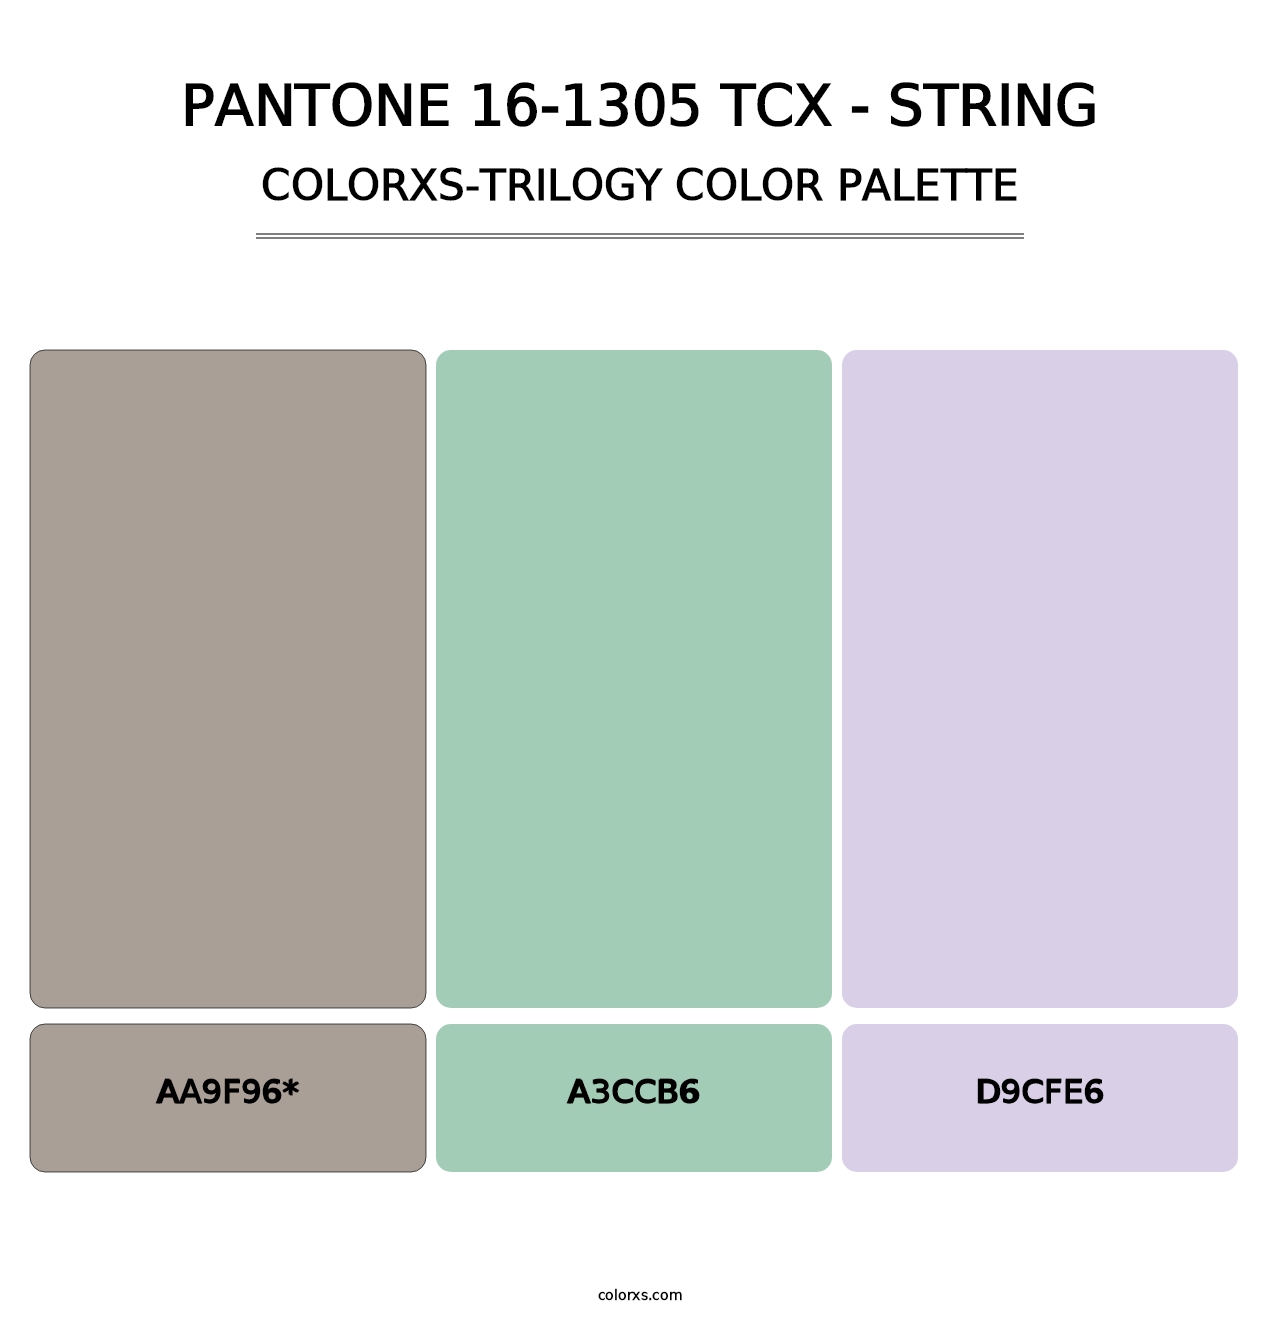 PANTONE 16-1305 TCX - String - Colorxs Trilogy Palette